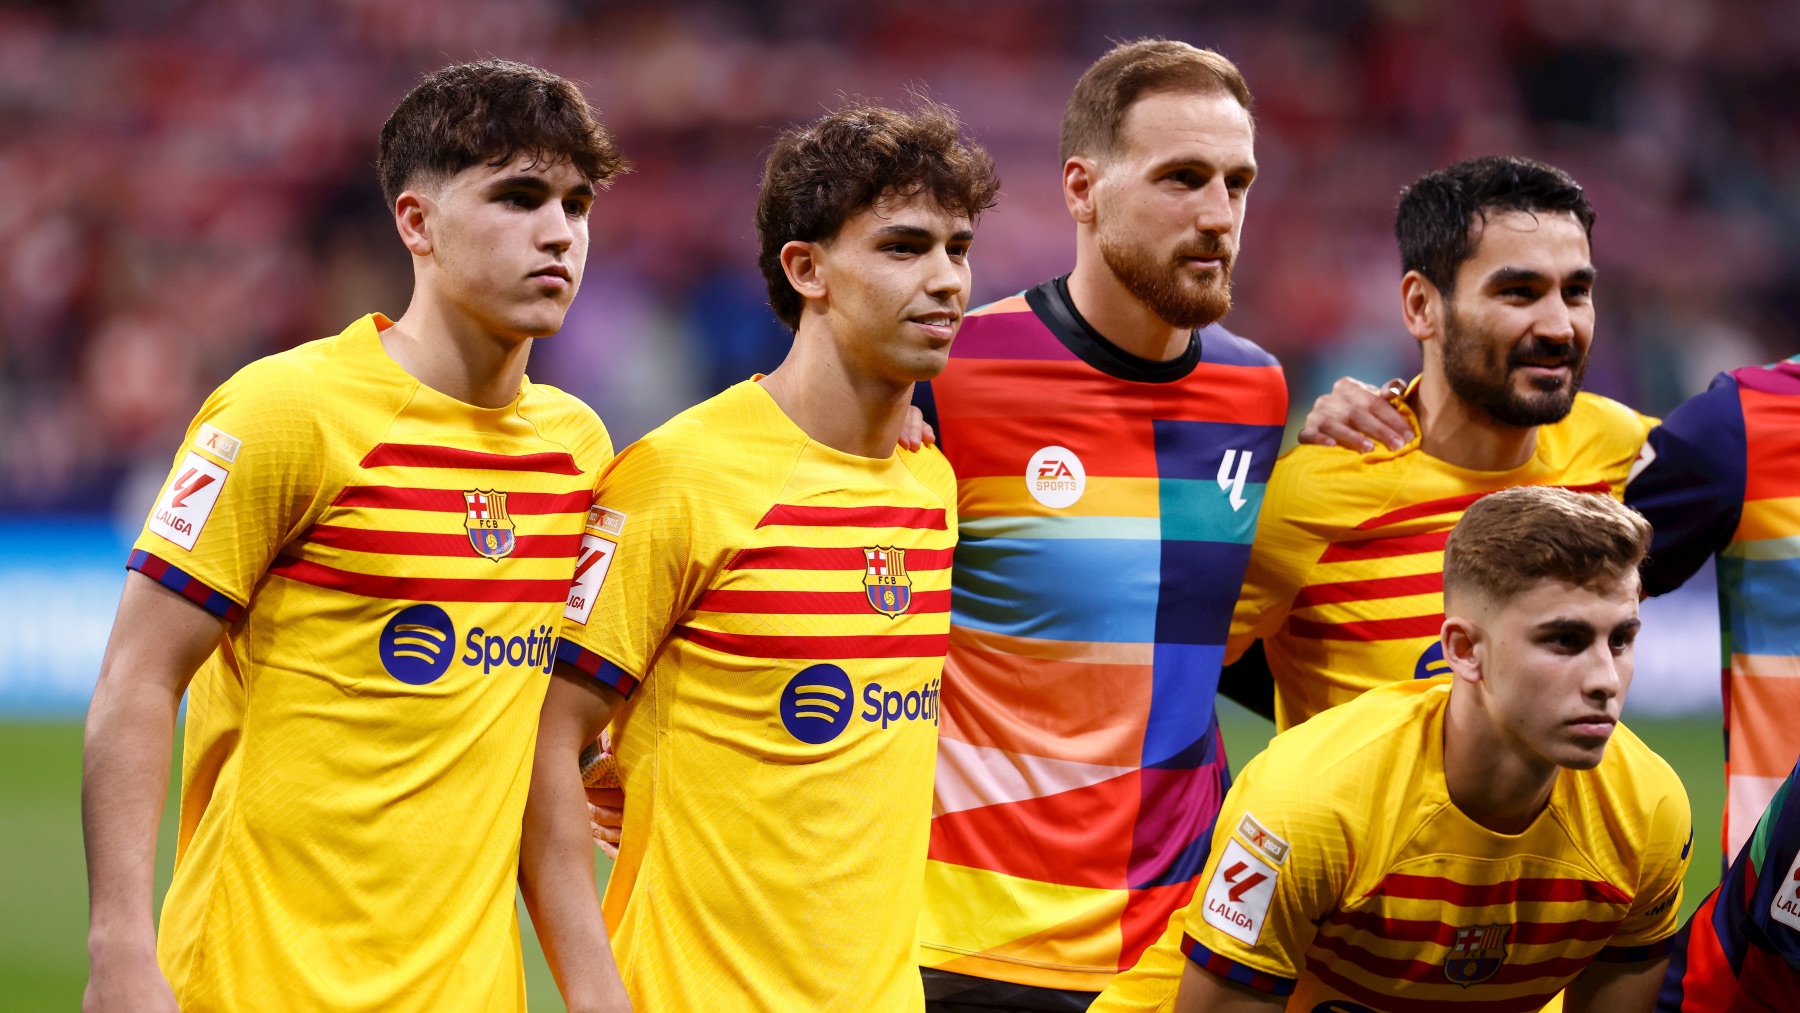 Los jugadores del Barcelona no posaron con la camiseta contra el racismo. (EP)